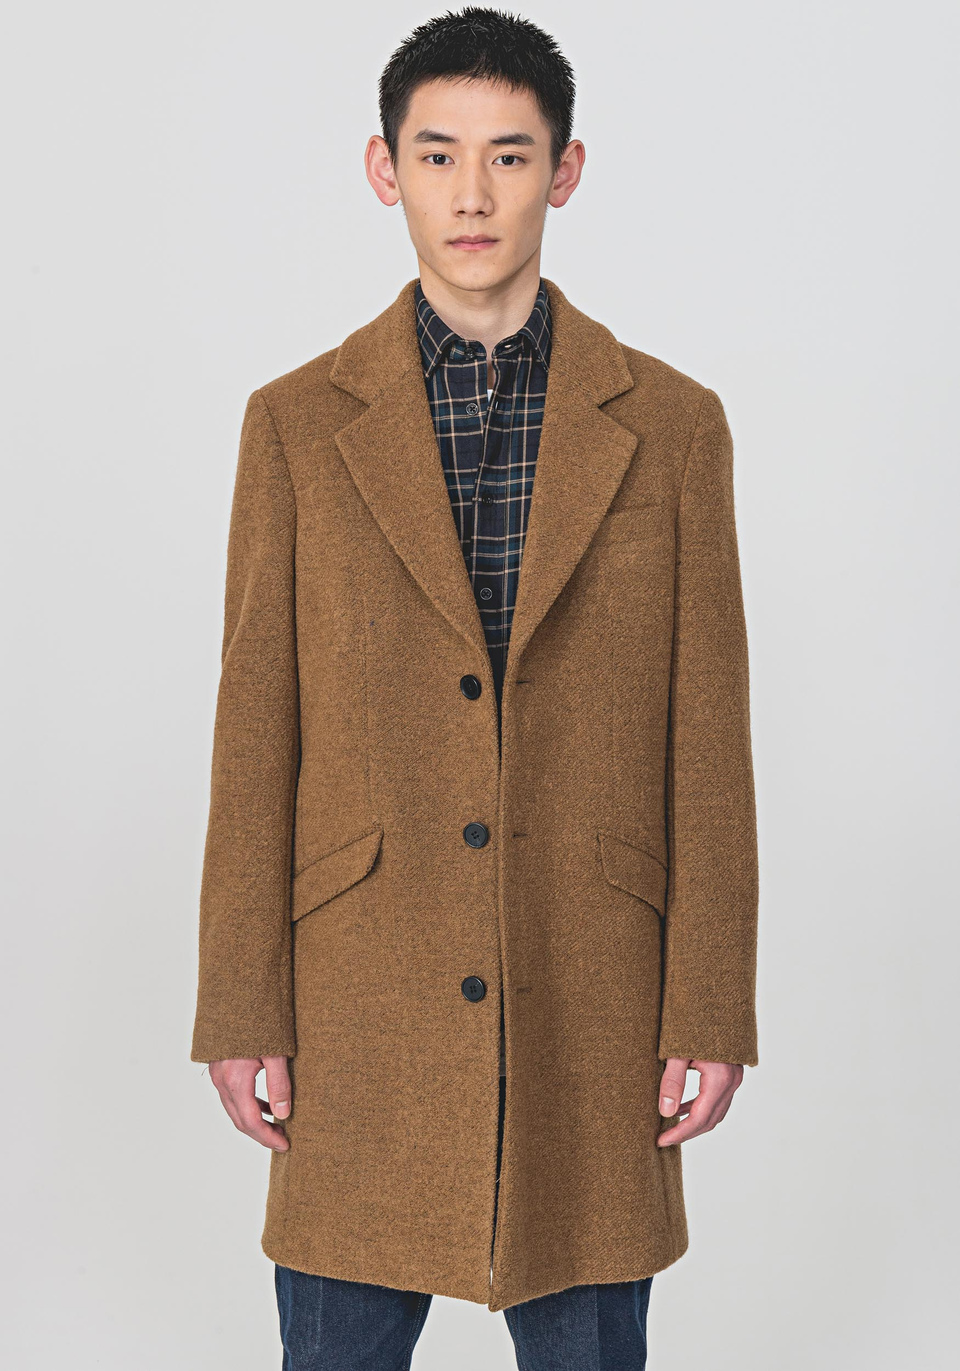 LONGLINE COAT IN A WARM WOOL BLEND - Antony Morato Online Shop